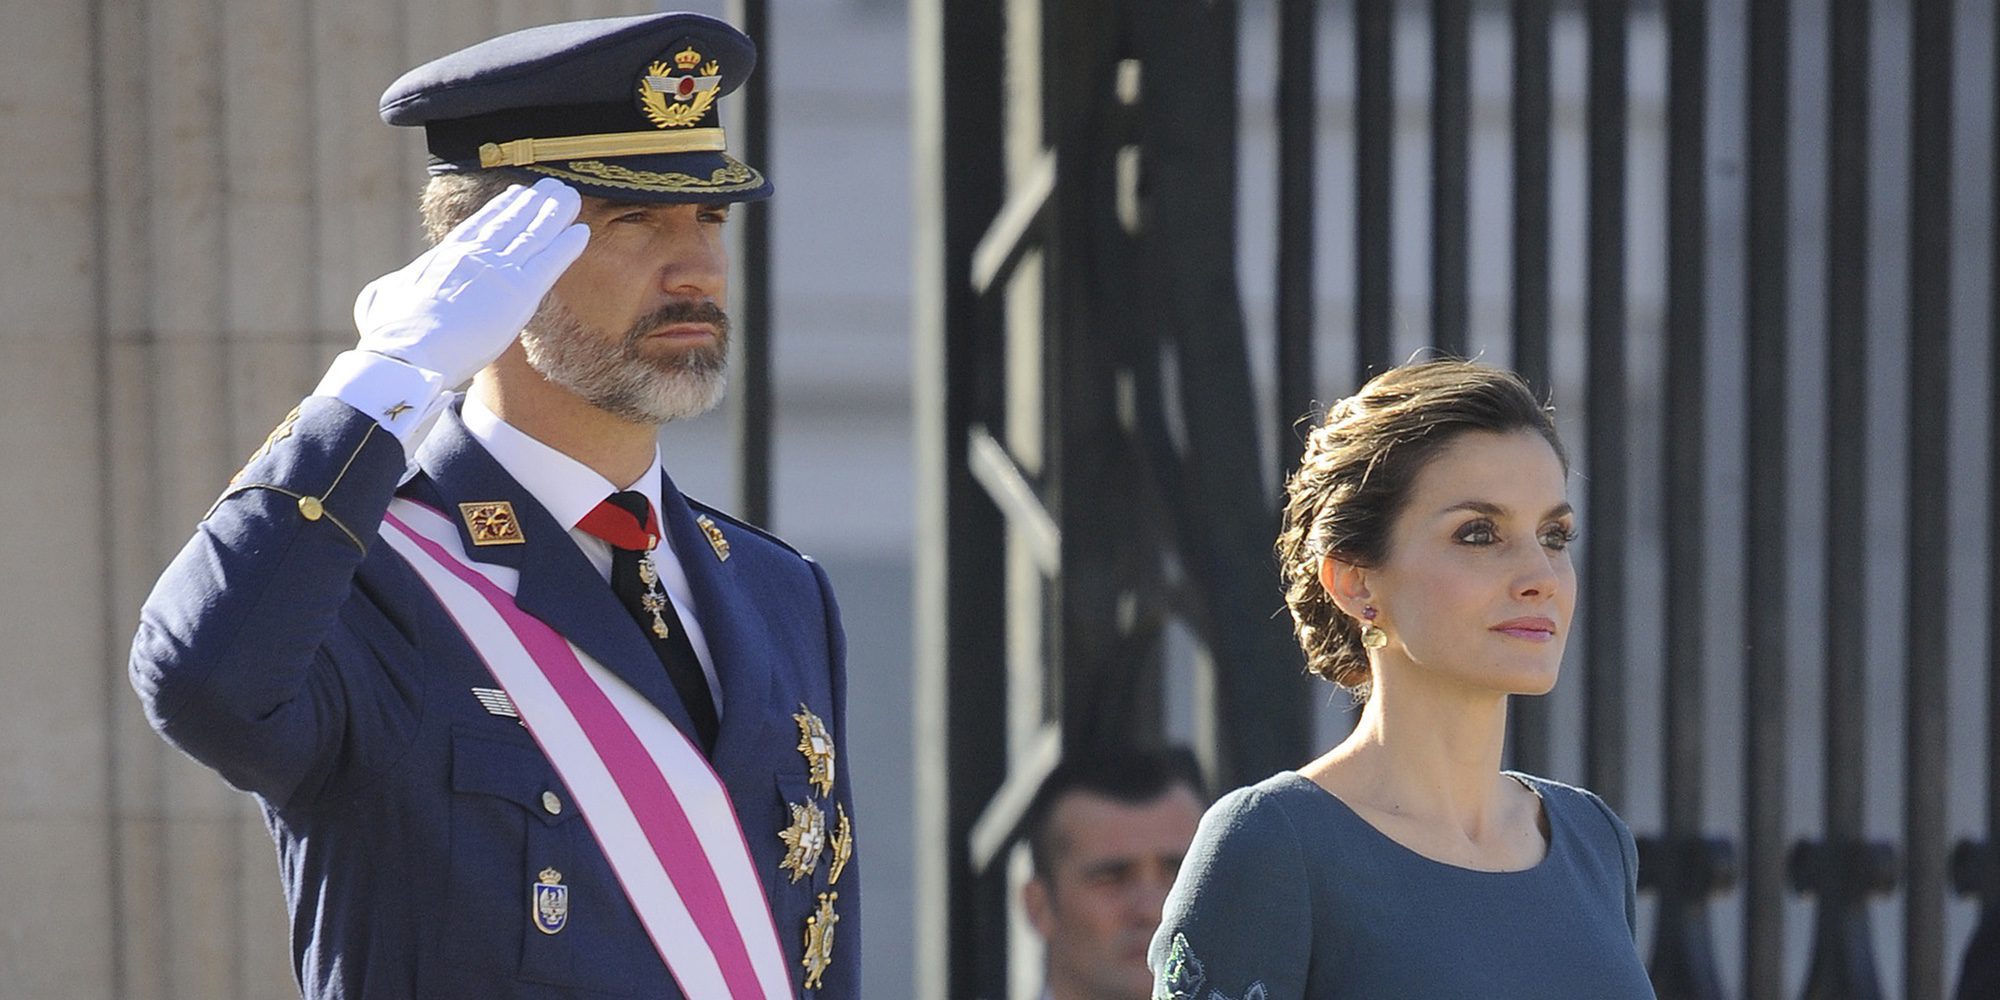 Los Reyes presiden su tercera Pascua Militar, marcada por el look repetido de la Reina Letizia